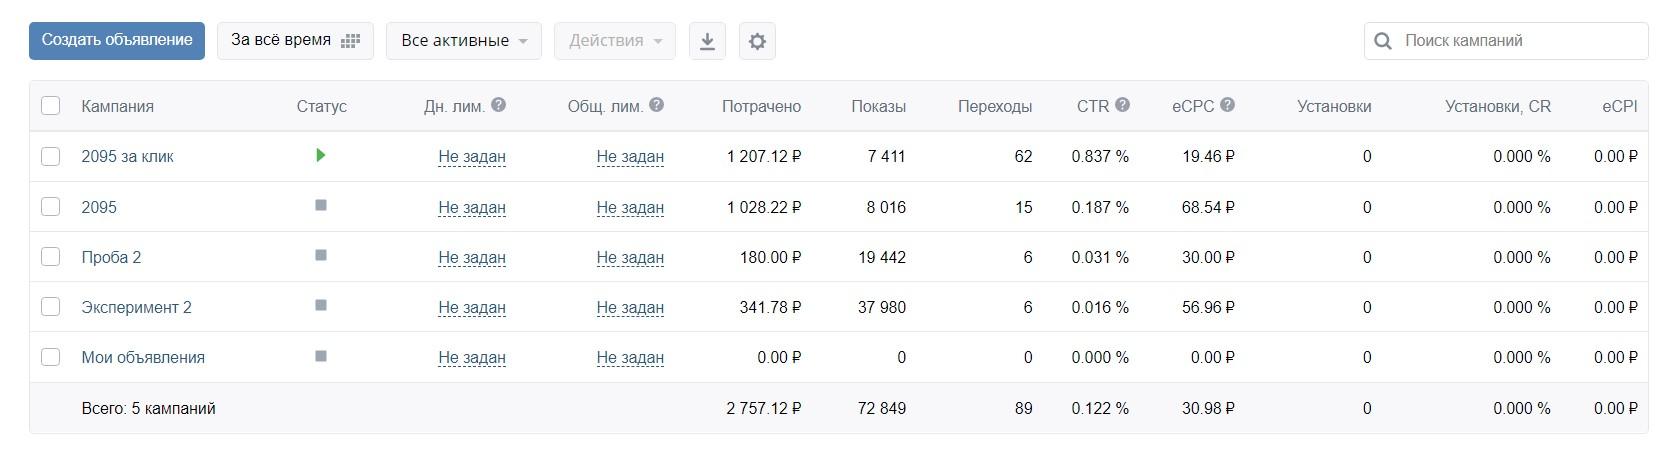 reklamnye-kampanii-vkontakte-statistika